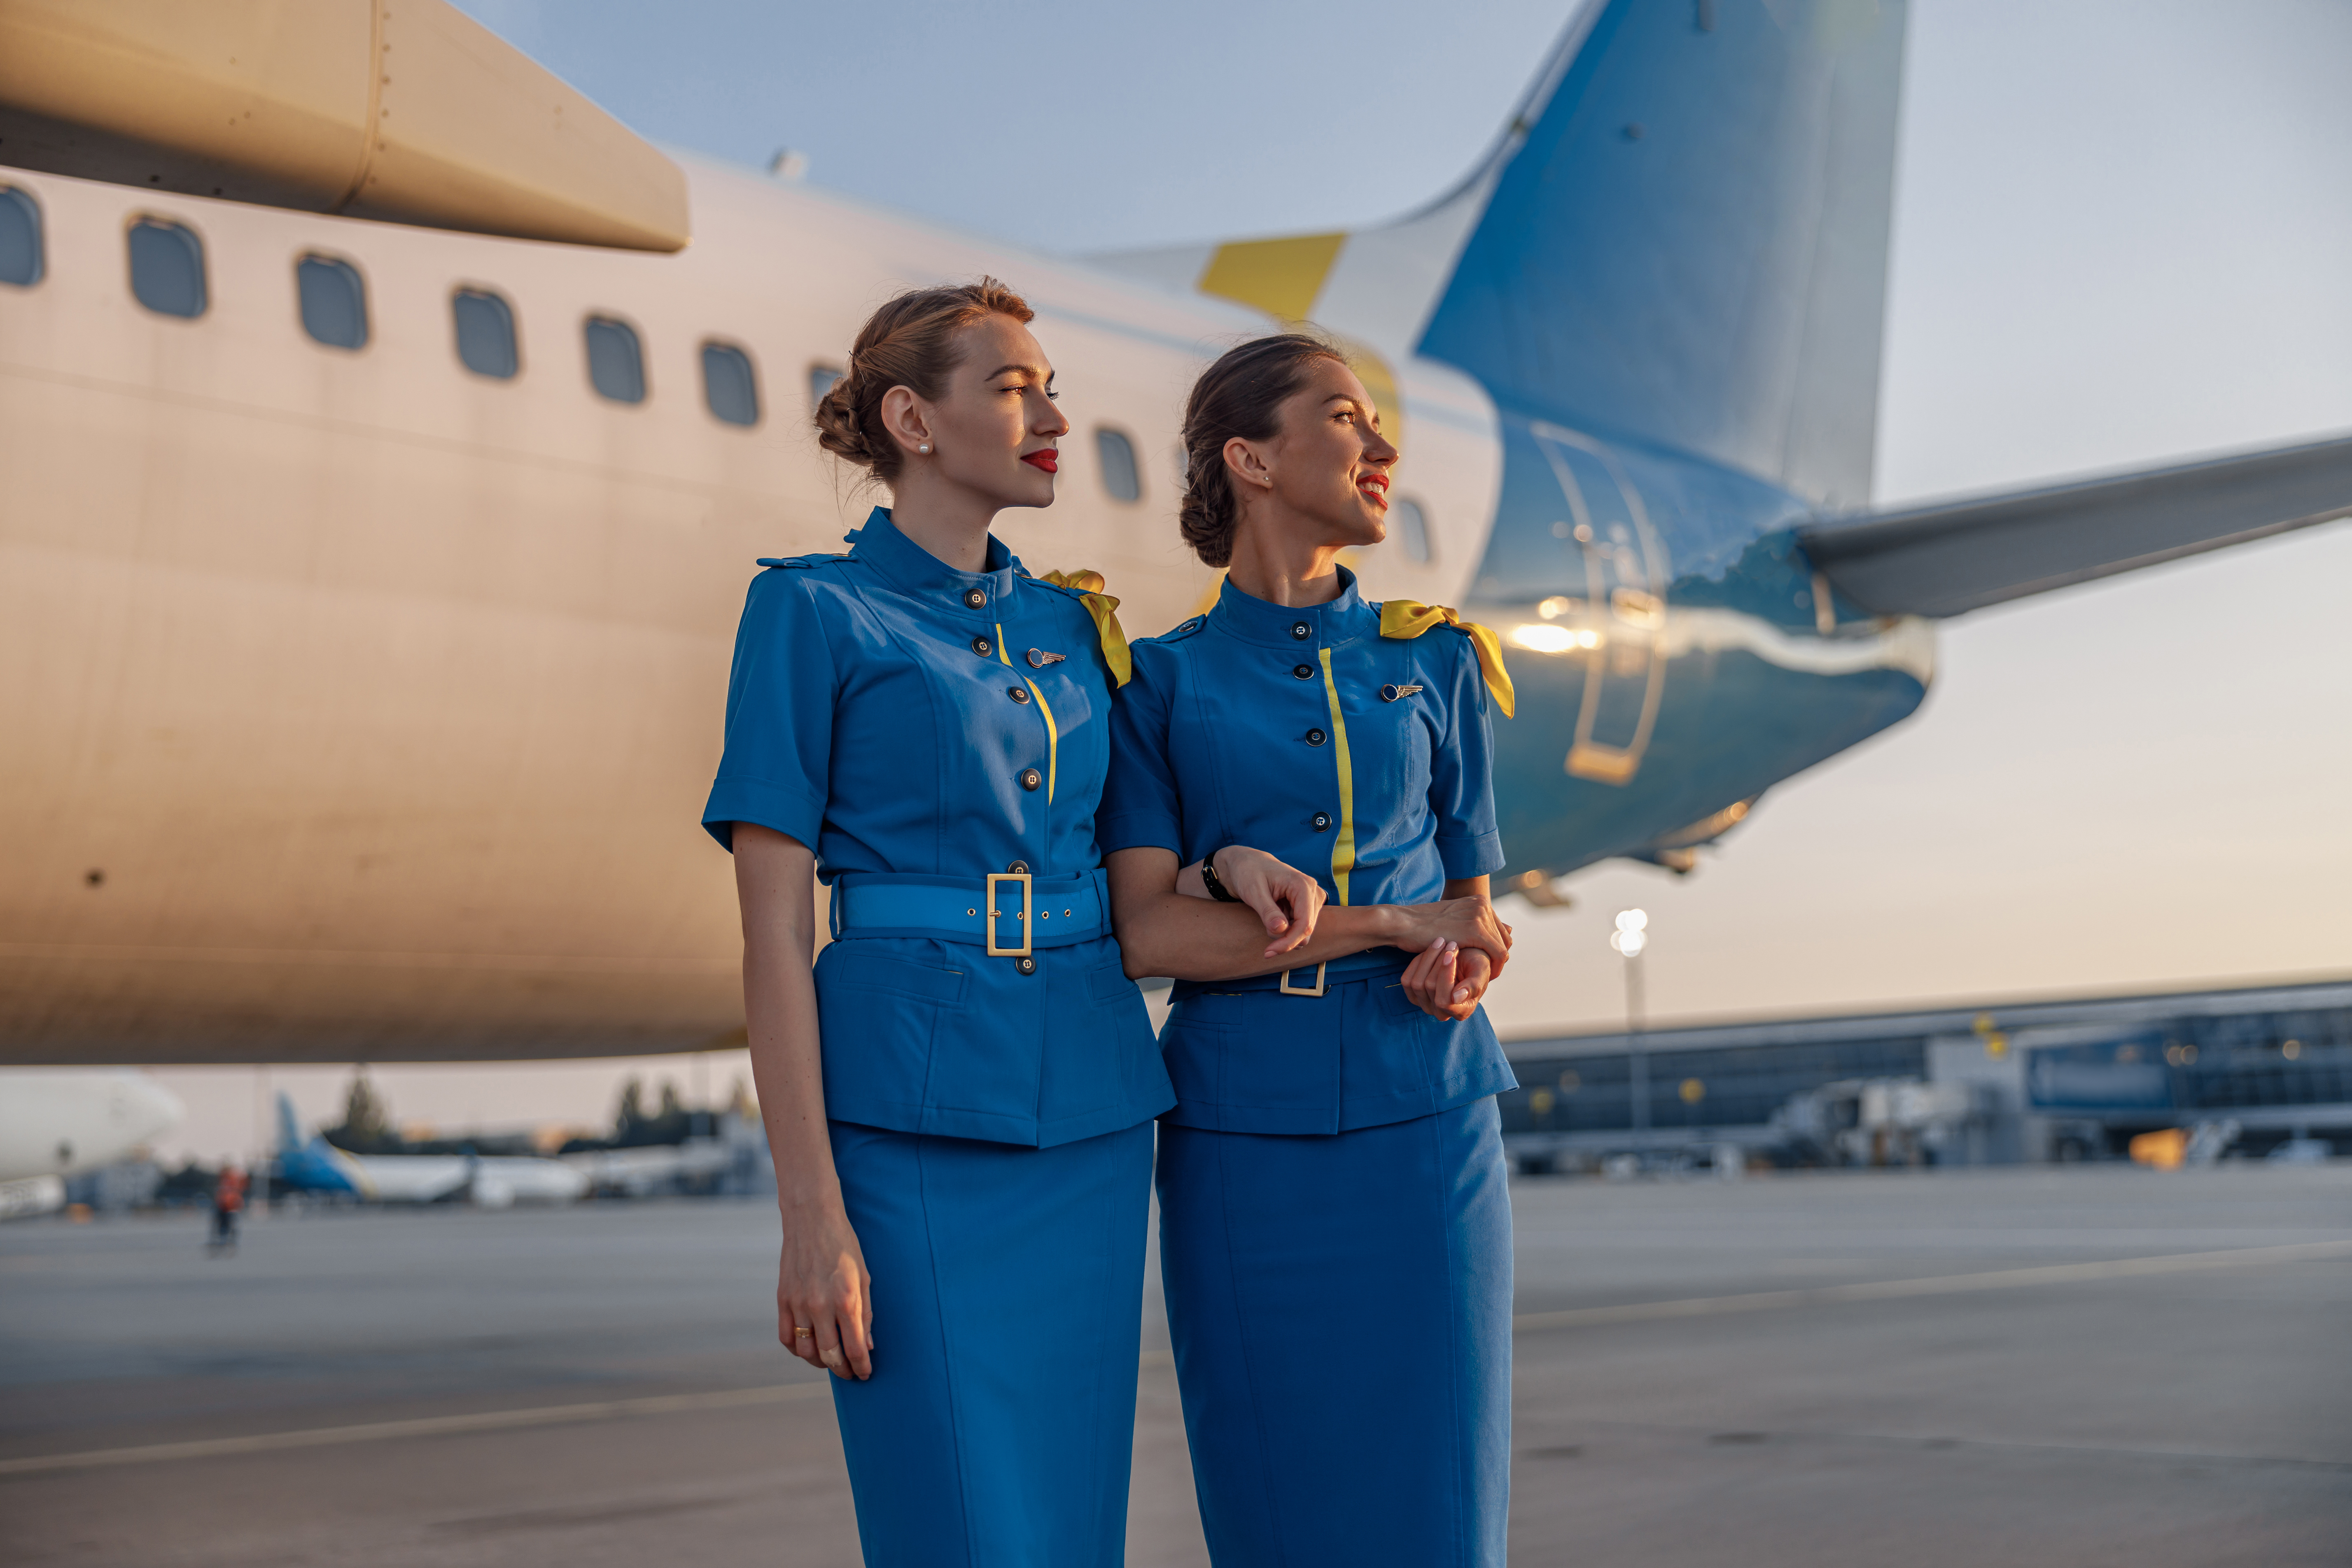 Zwei Flugbegleiterinnen | Quelle: Shutterstock